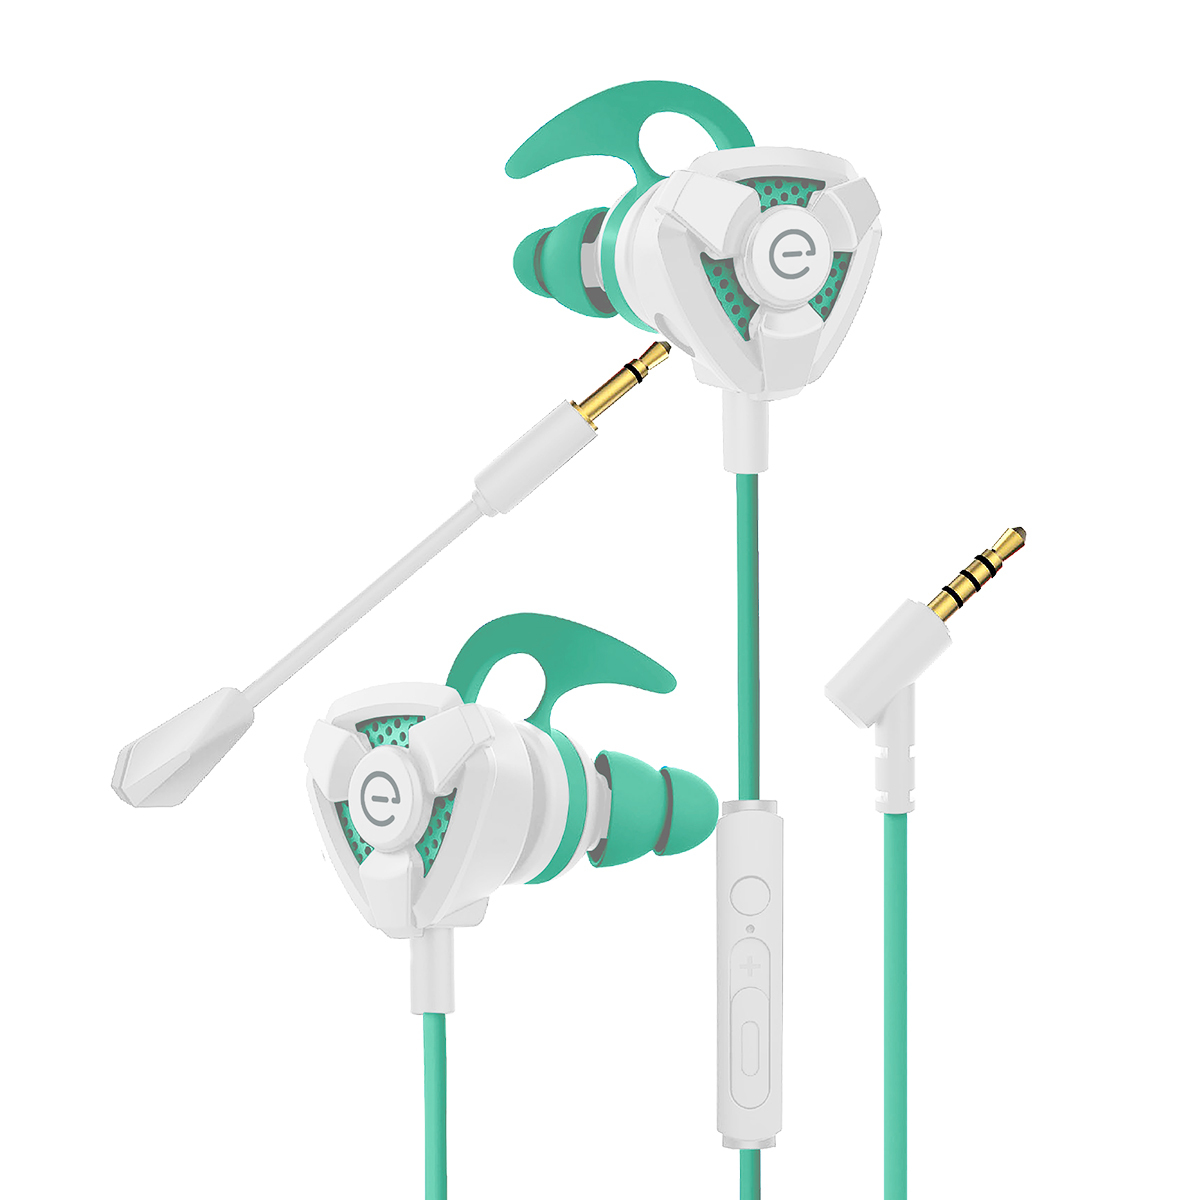 Audífonos Easy Line EL-995708 / In ear / Alámbricos / True Wireless / Verde con blanco 